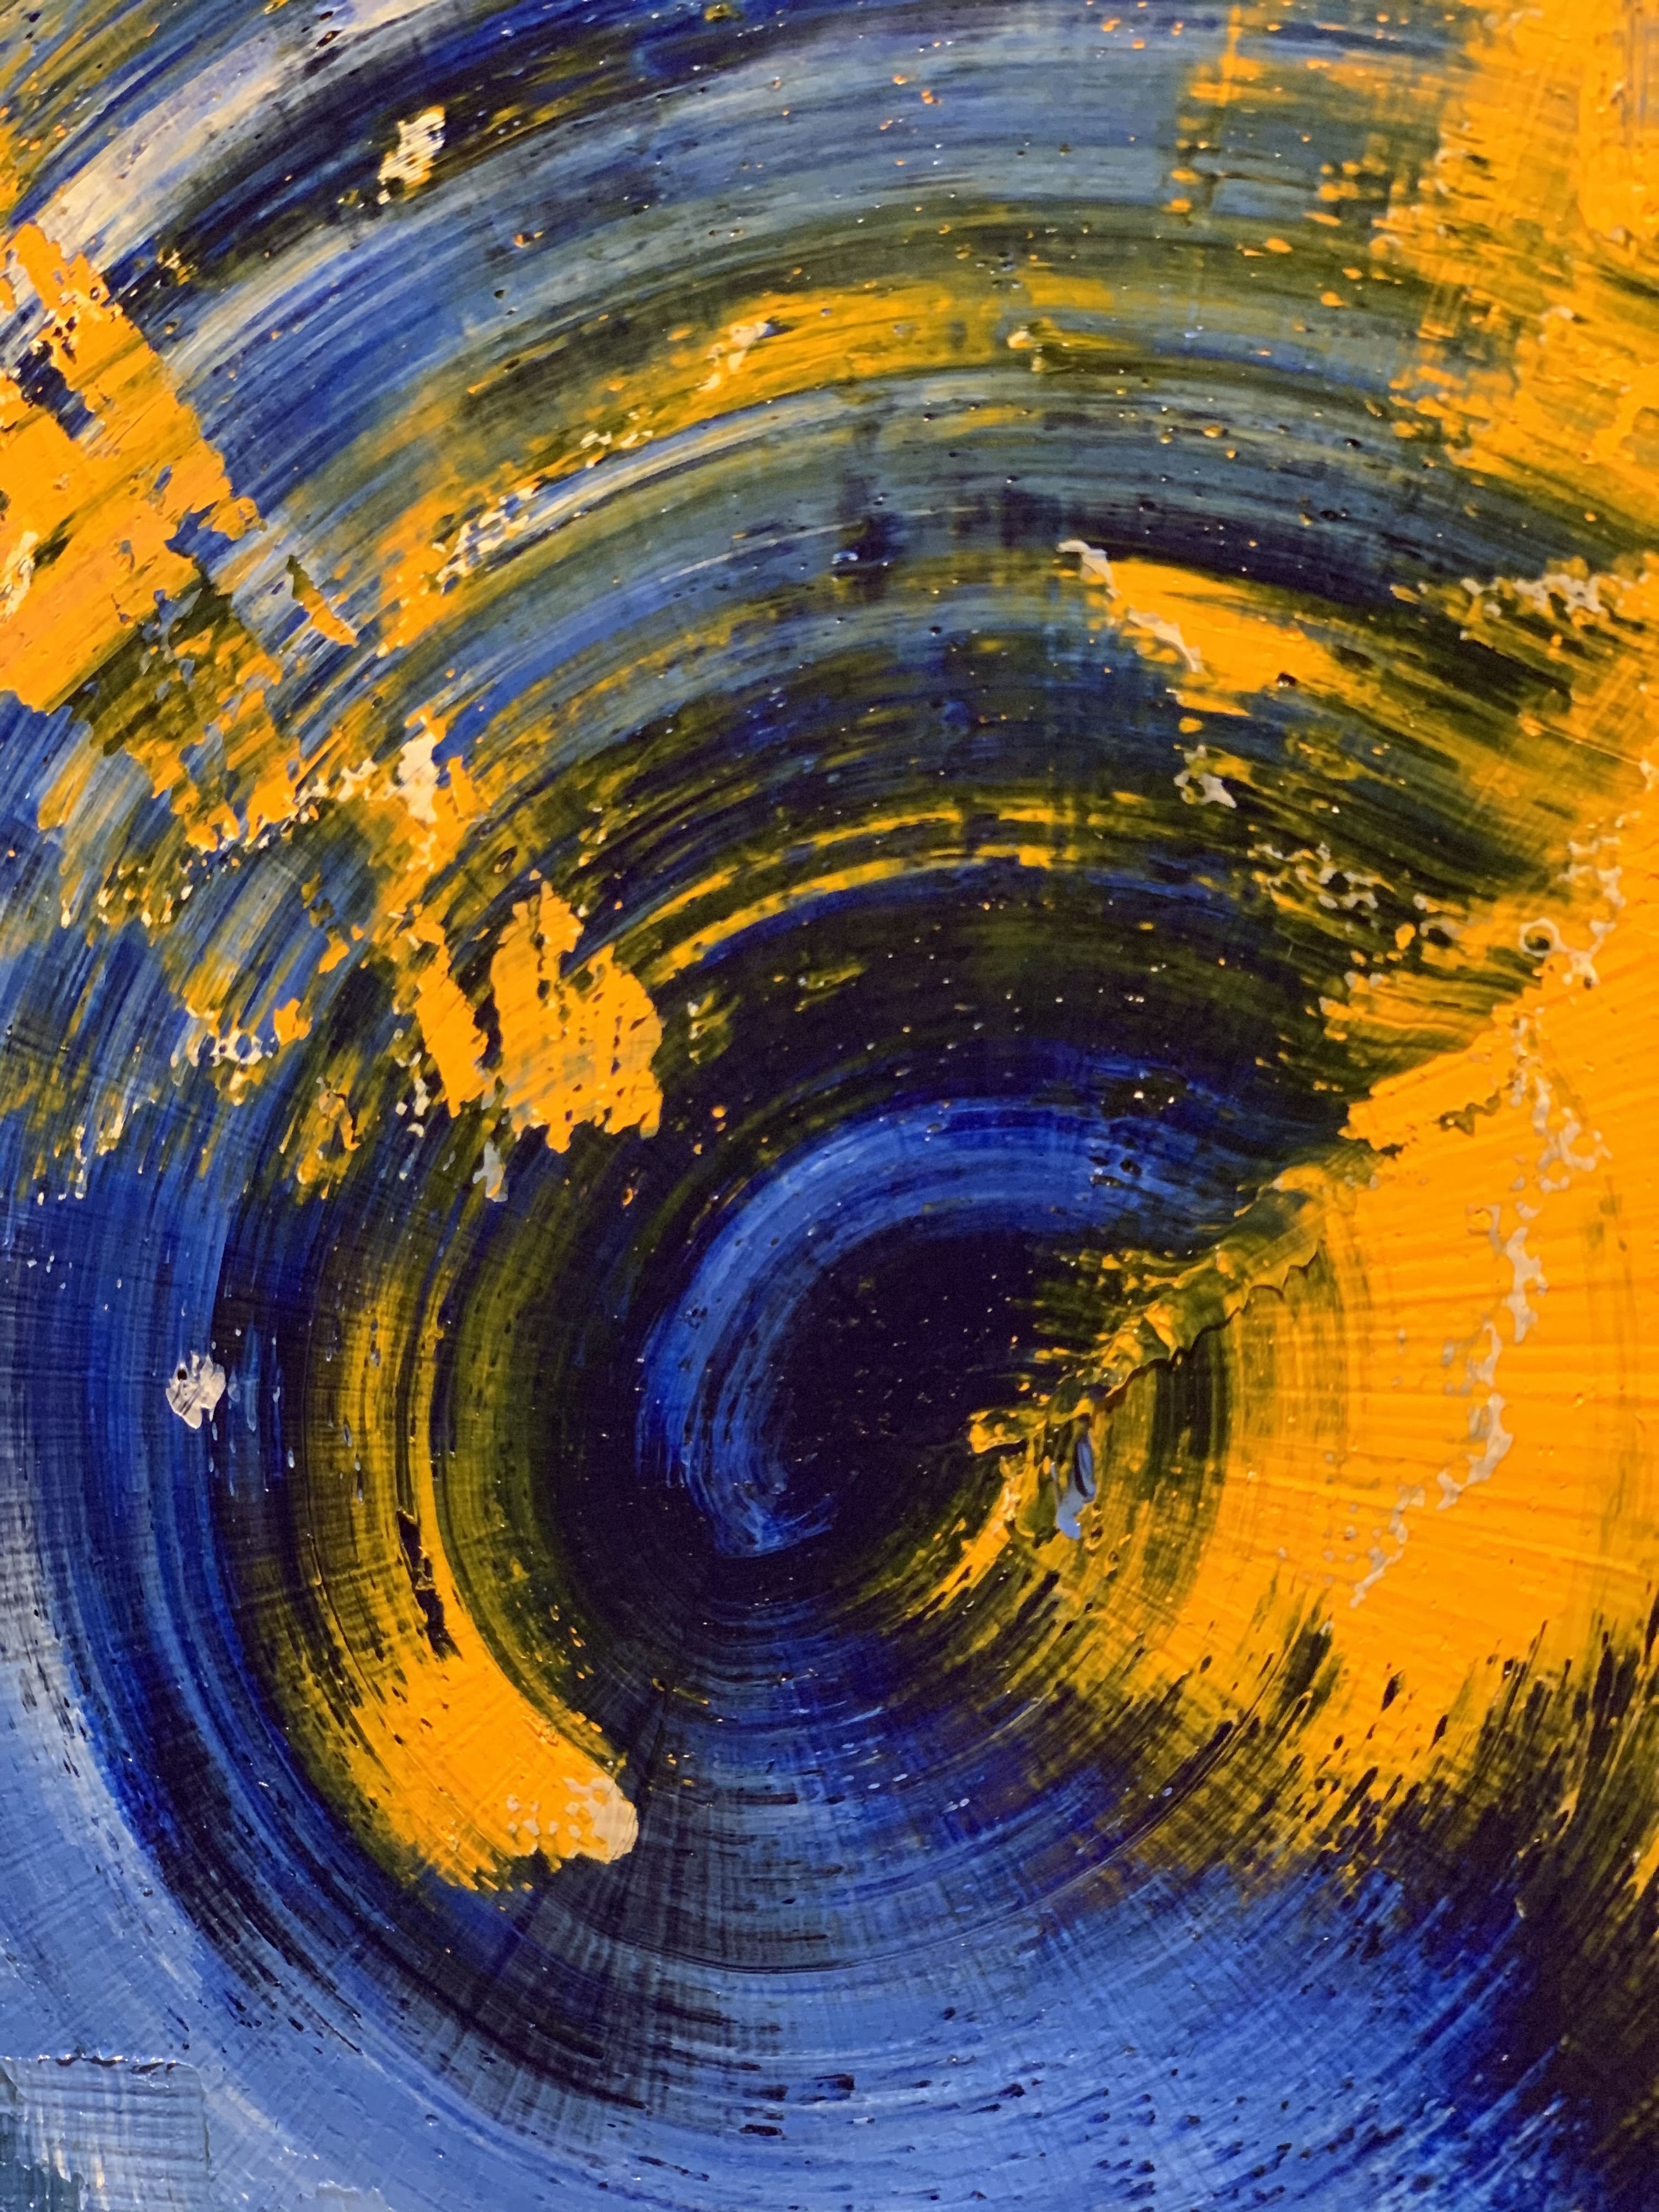 Картина маслом на холсте в голубых и желтых тонах Зимняя симфония 2021-5